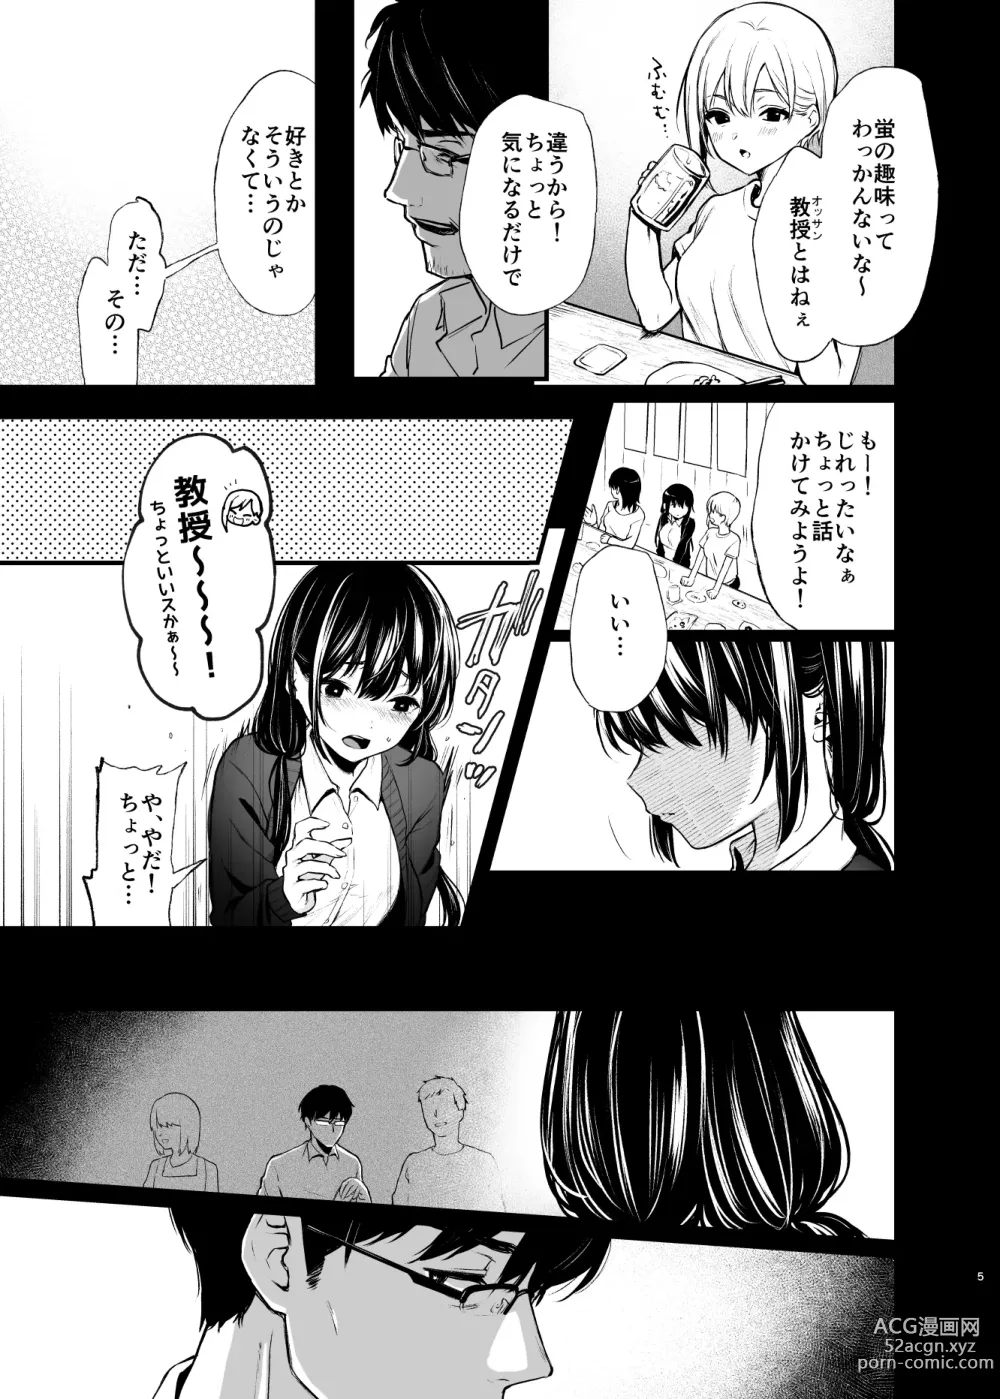 Page 5 of doujinshi Sore wa Hi ni Iru Natsu no Mushi